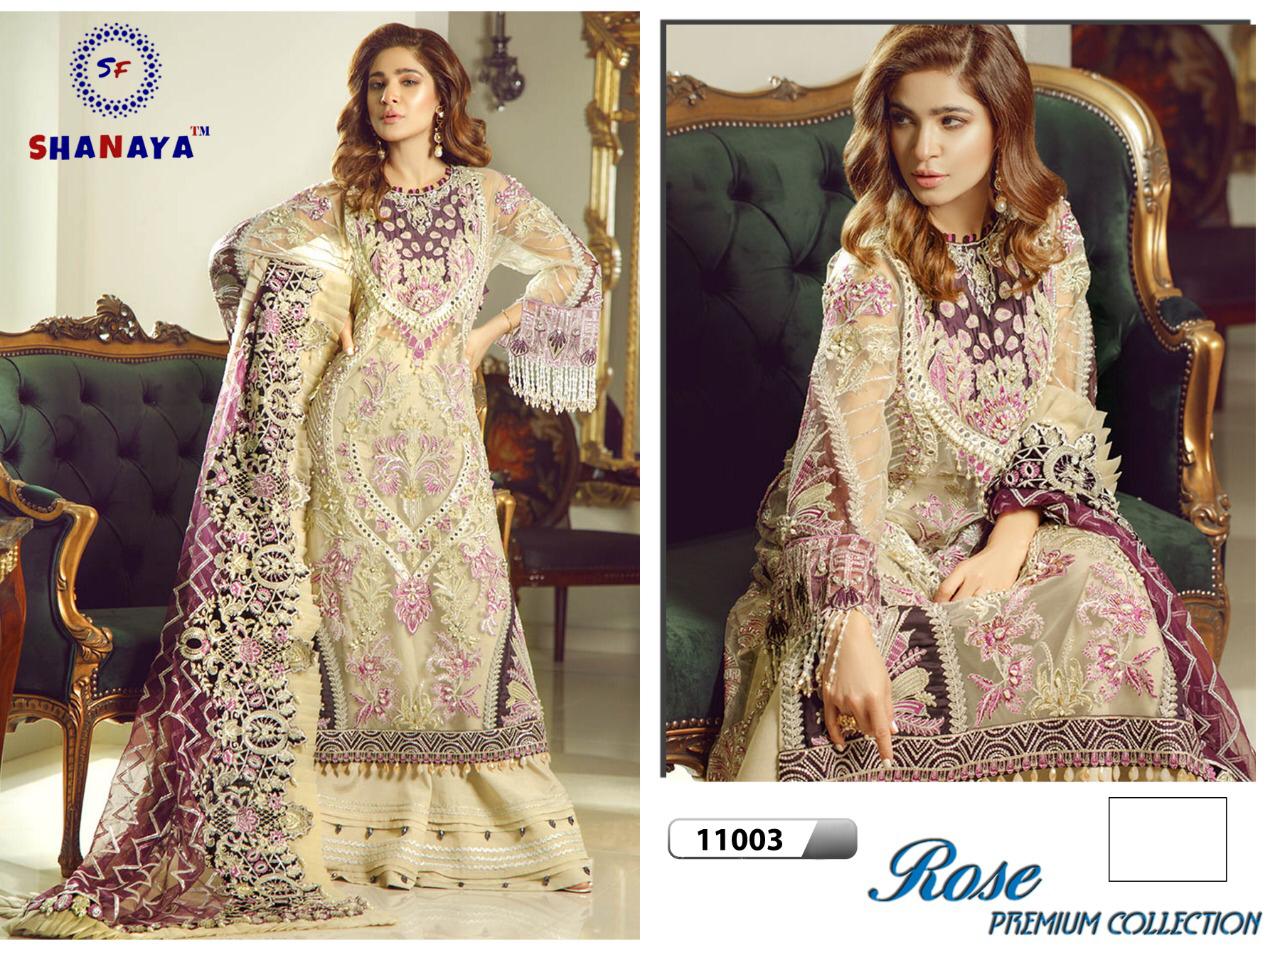 Shanaya Fashion Rose Premium Collection 11003